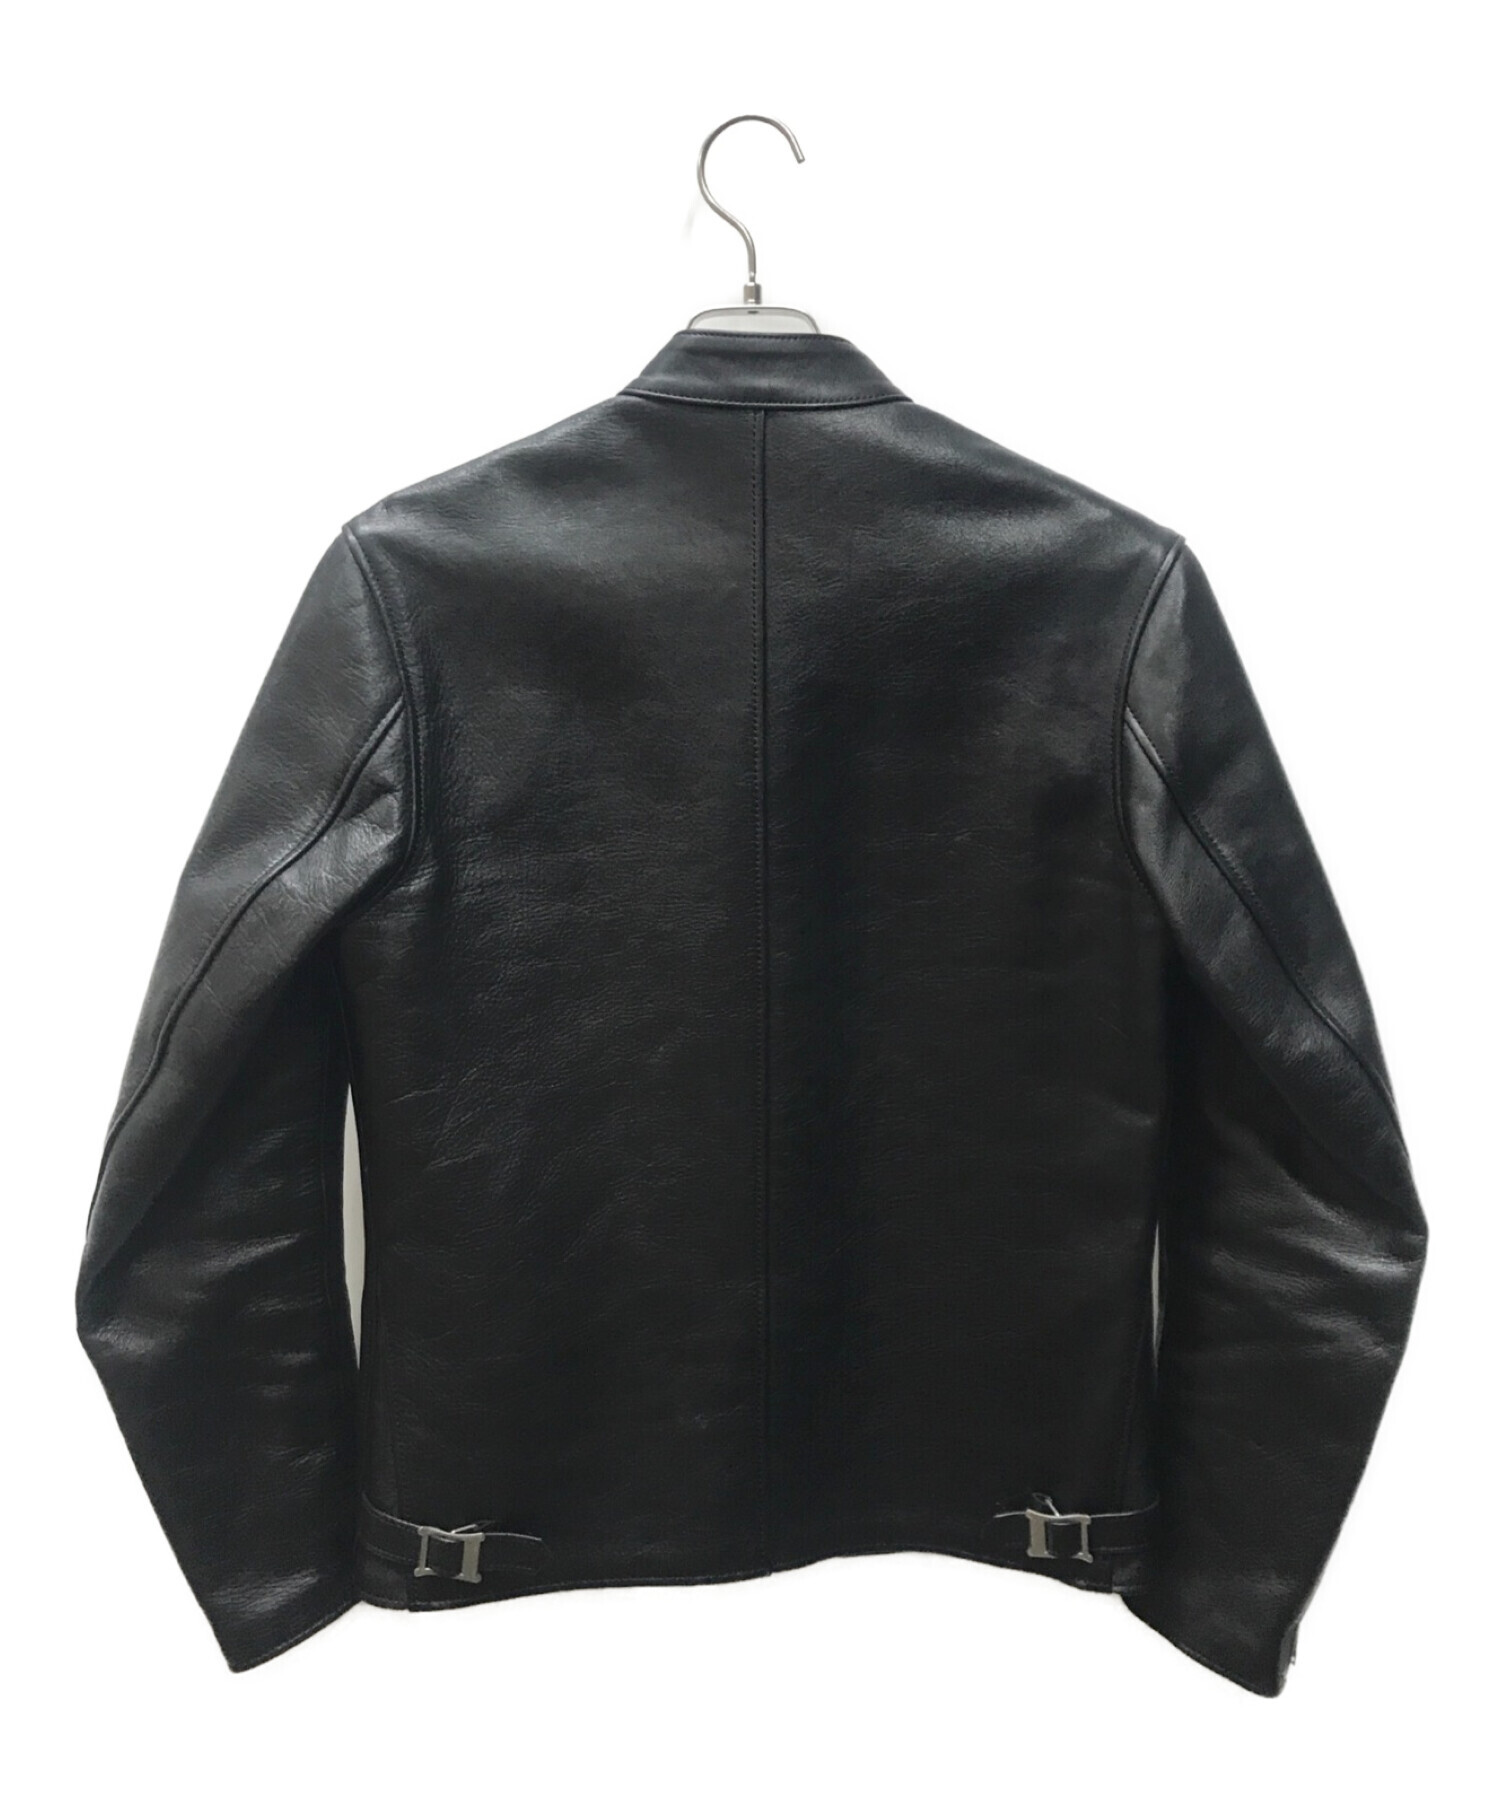 ADDICT CLOTHES NEW VINTAGE (アディクトクローズ ニューヴィンテージ) ホースハイドシングルライダースジャケット ブラック  サイズ:38